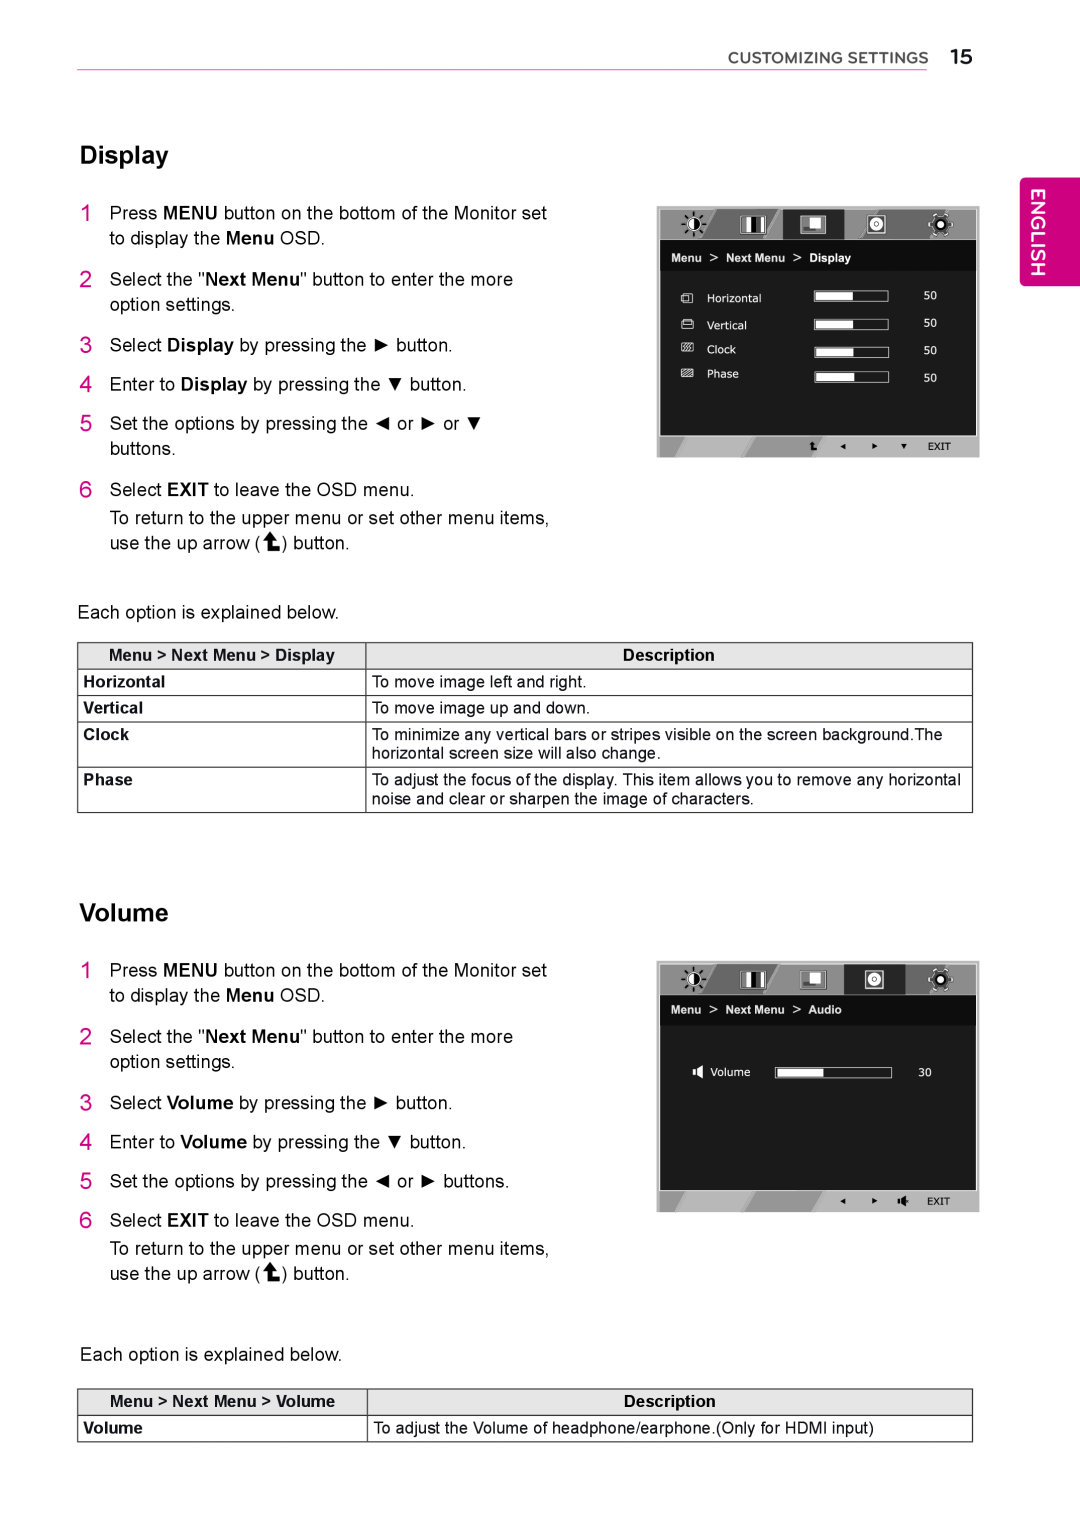 LG Electronics 24EN33VW owner manual Display, Volume, English 